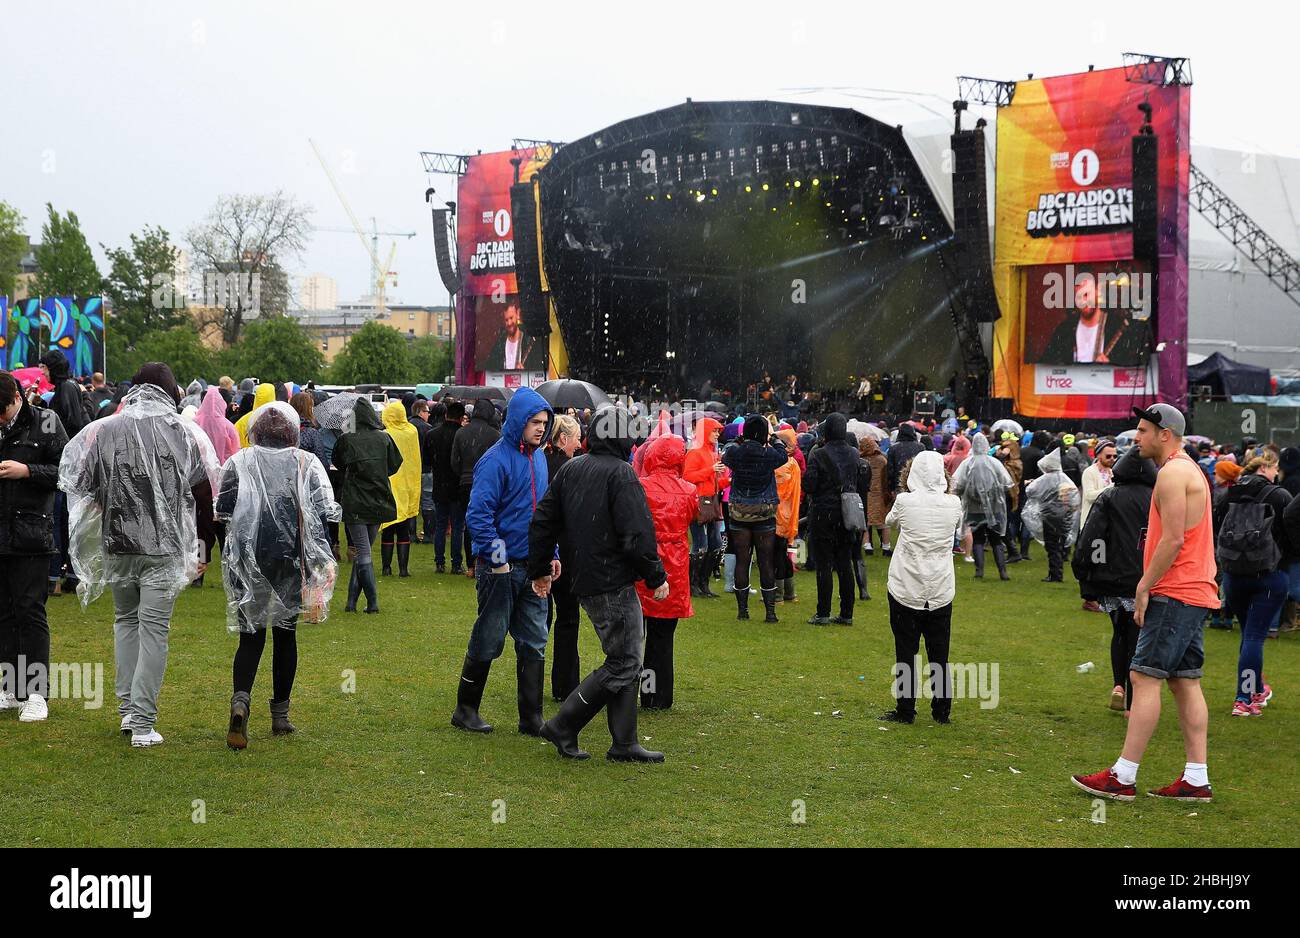 Regnerisches Wetter Blick auf Publikum und Bühne während des BBC Radio 1 Big Weekend Festivals auf Glasgow Green in Glasgow, Schottland. Stockfoto